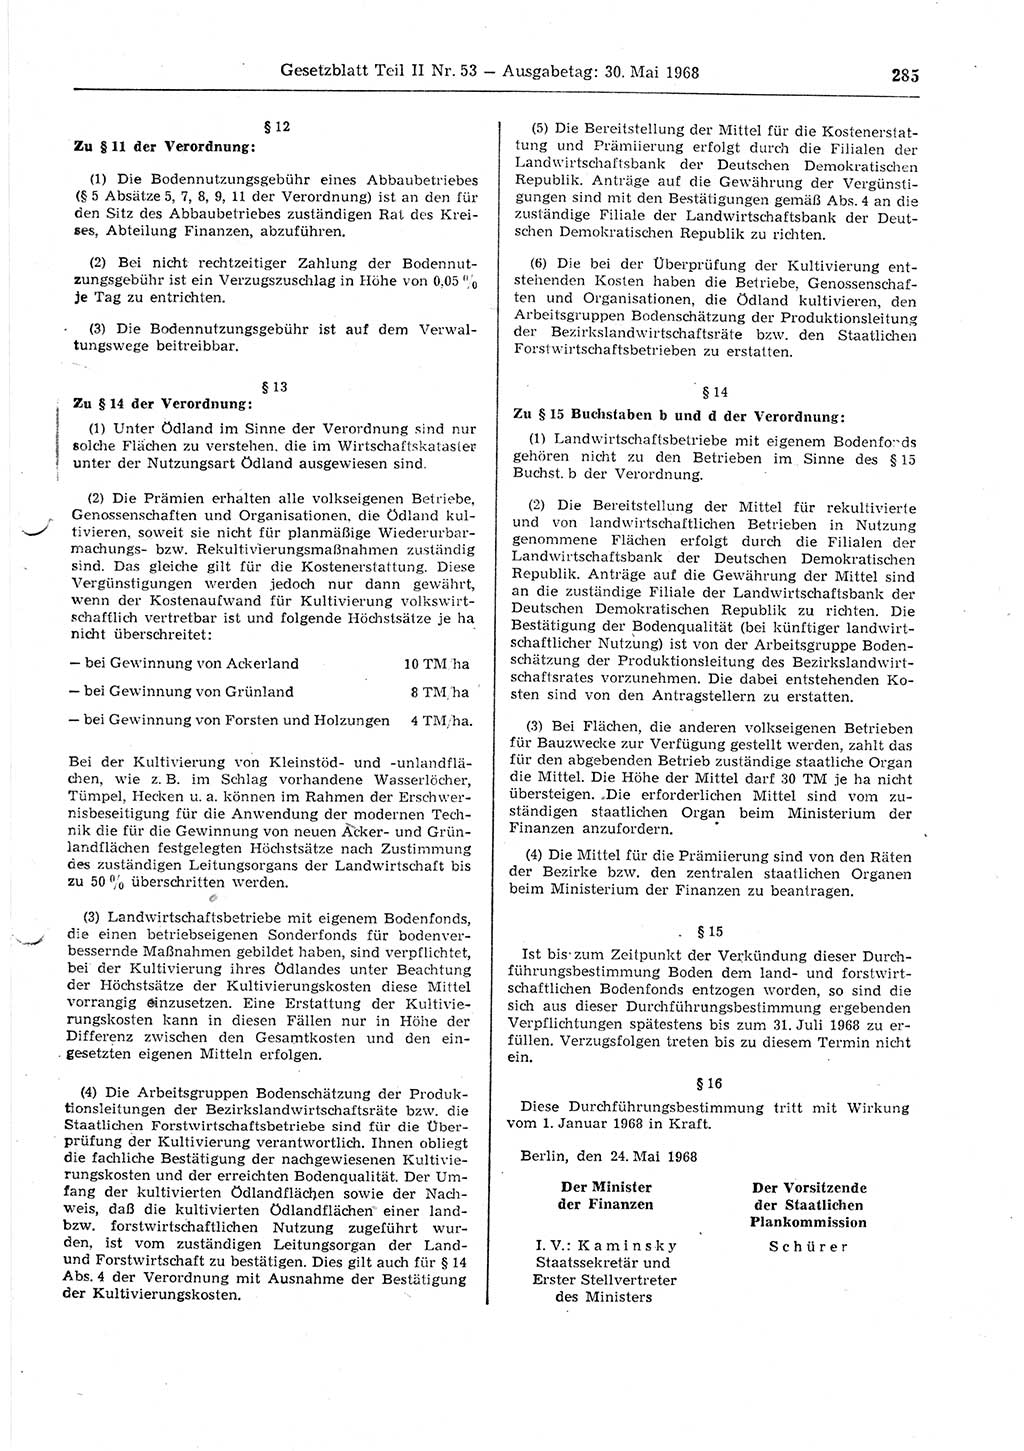 Gesetzblatt (GBl.) der Deutschen Demokratischen Republik (DDR) Teil ⅠⅠ 1968, Seite 285 (GBl. DDR ⅠⅠ 1968, S. 285)